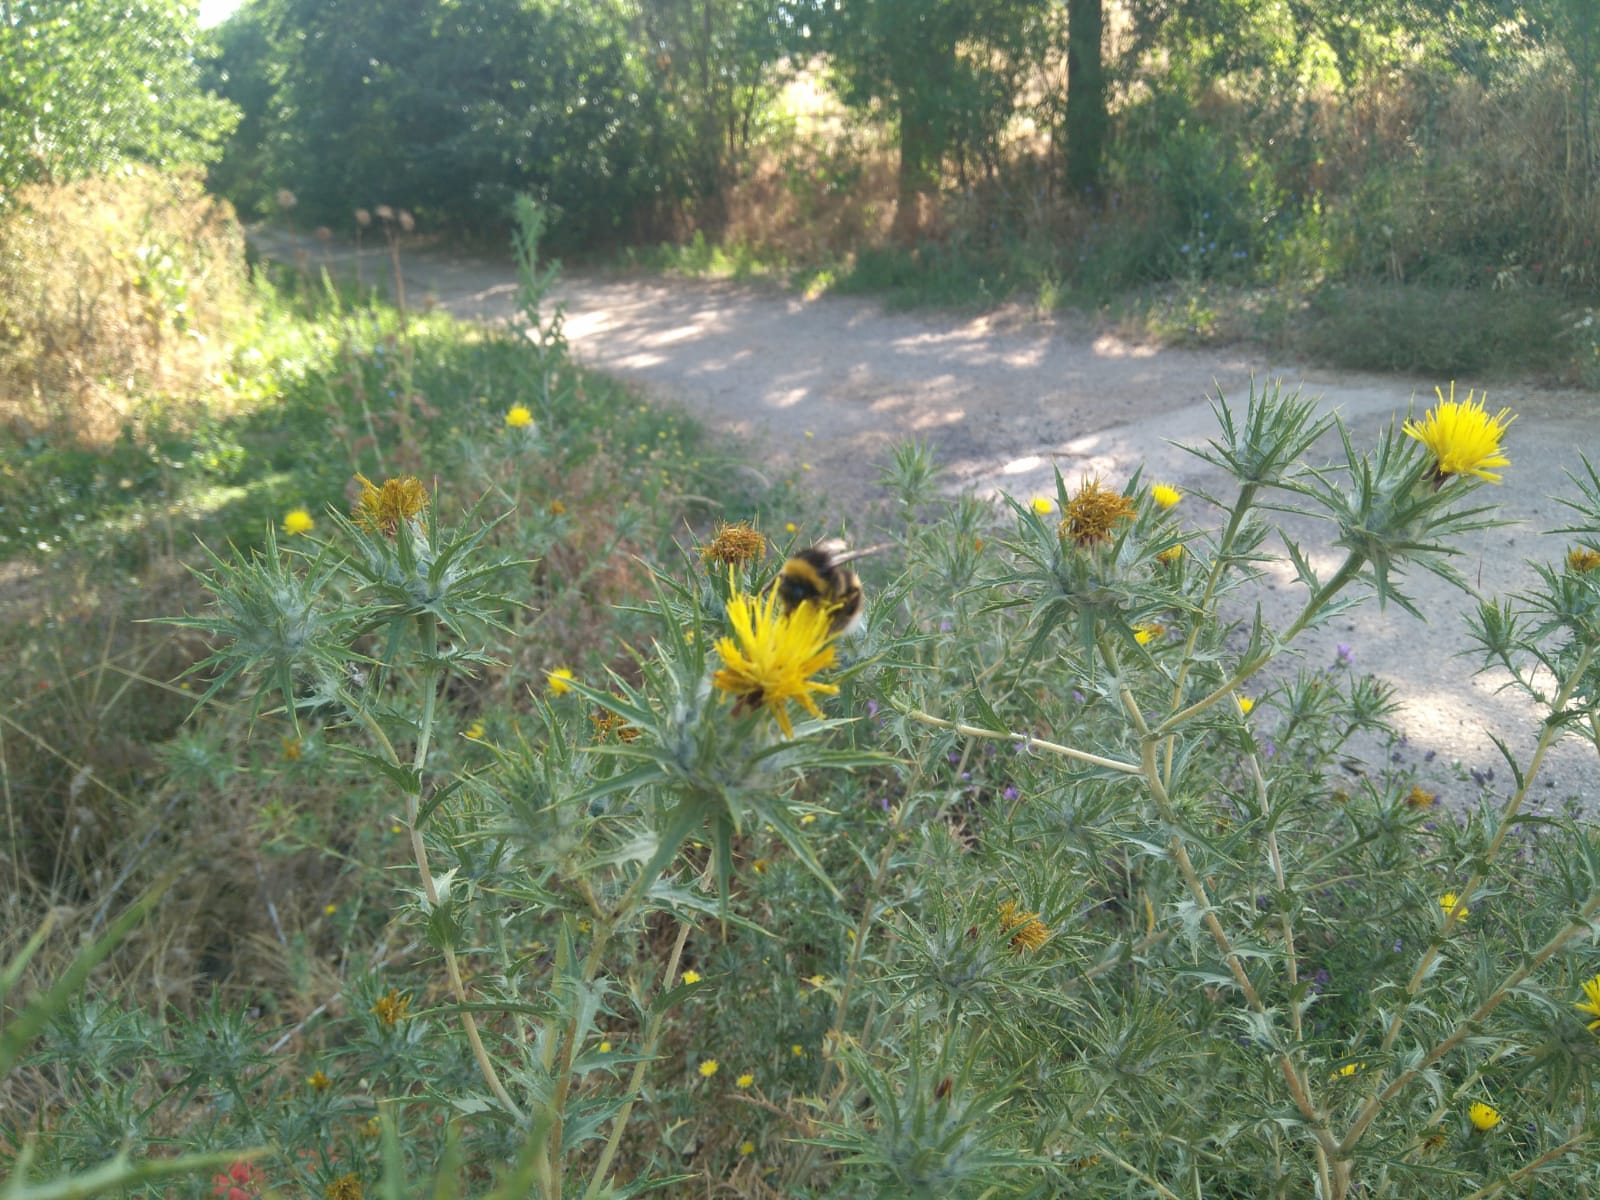 Camino rodeado de plantas verdes y flores amarillas, sobre una de ellas una abeja